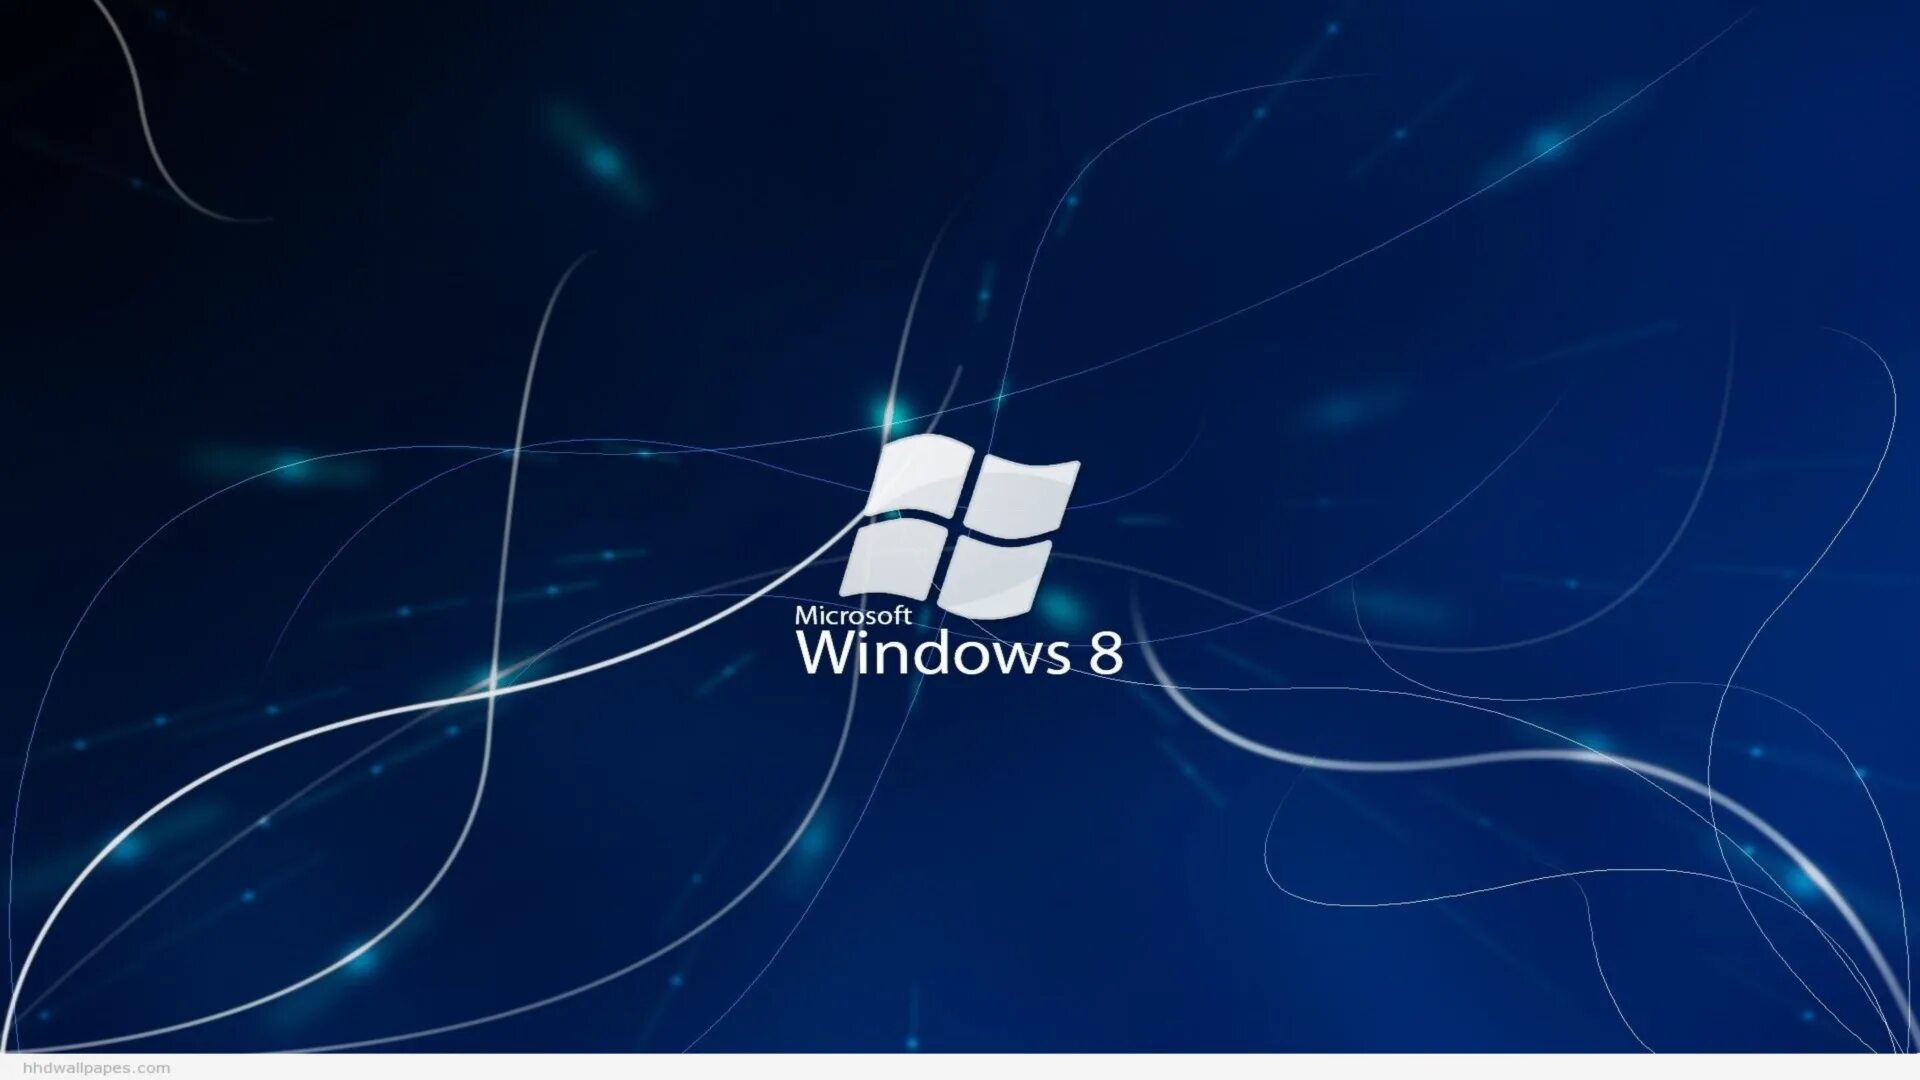 Window 8.2. Заставка виндовс 8. Картинки Windows 8. Windows 8 рабочий стол. Обои на рабочий стол Windows 8.